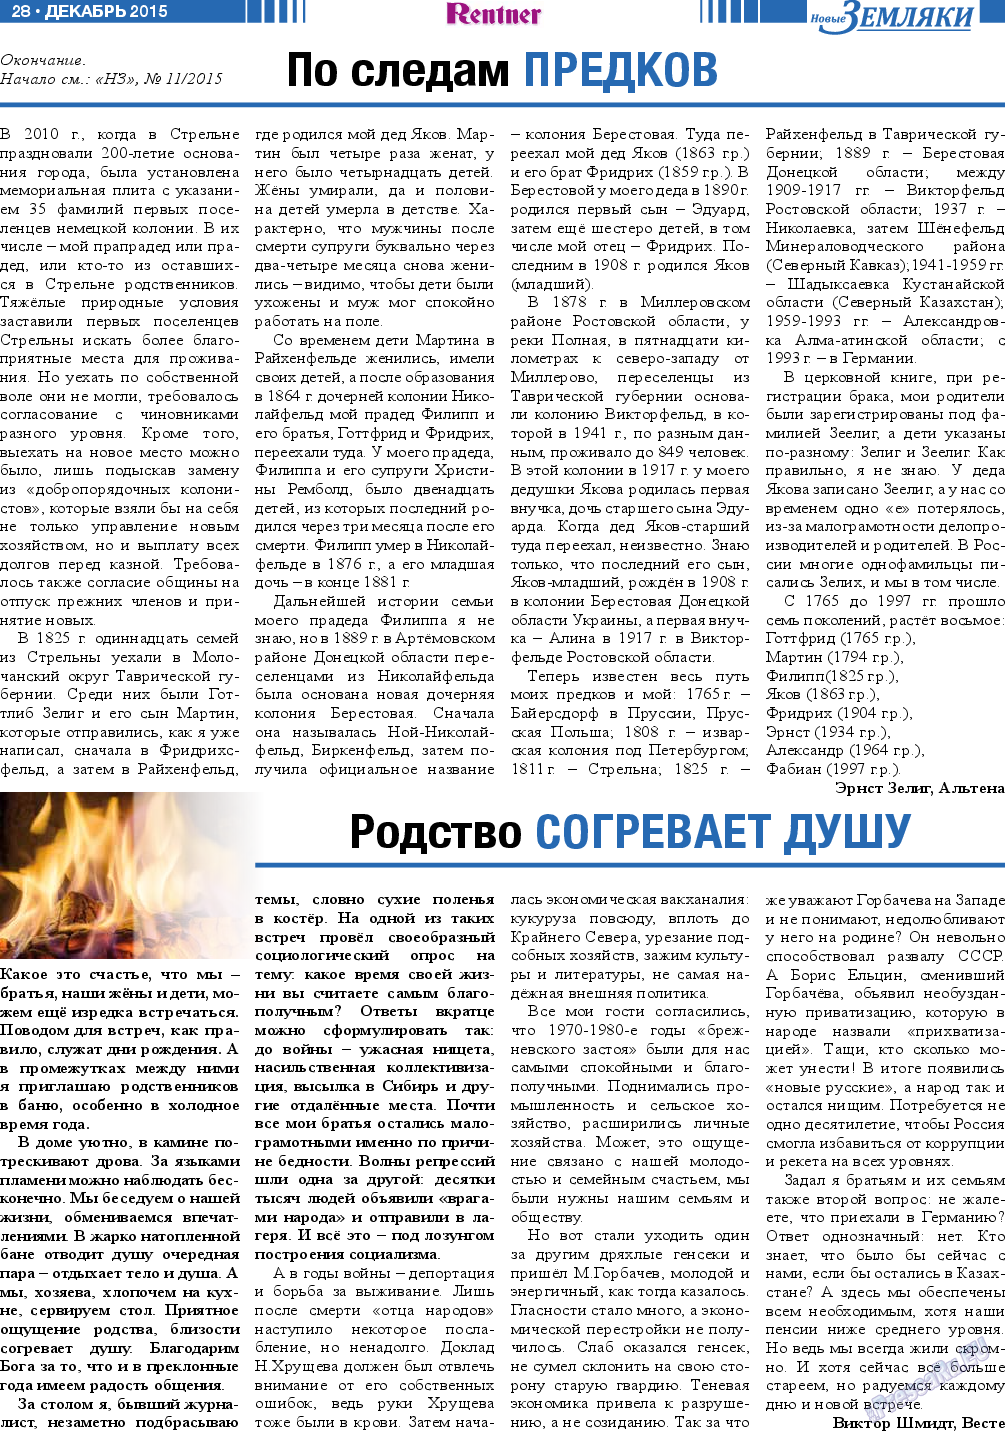 Новые Земляки, газета. 2015 №12 стр.28